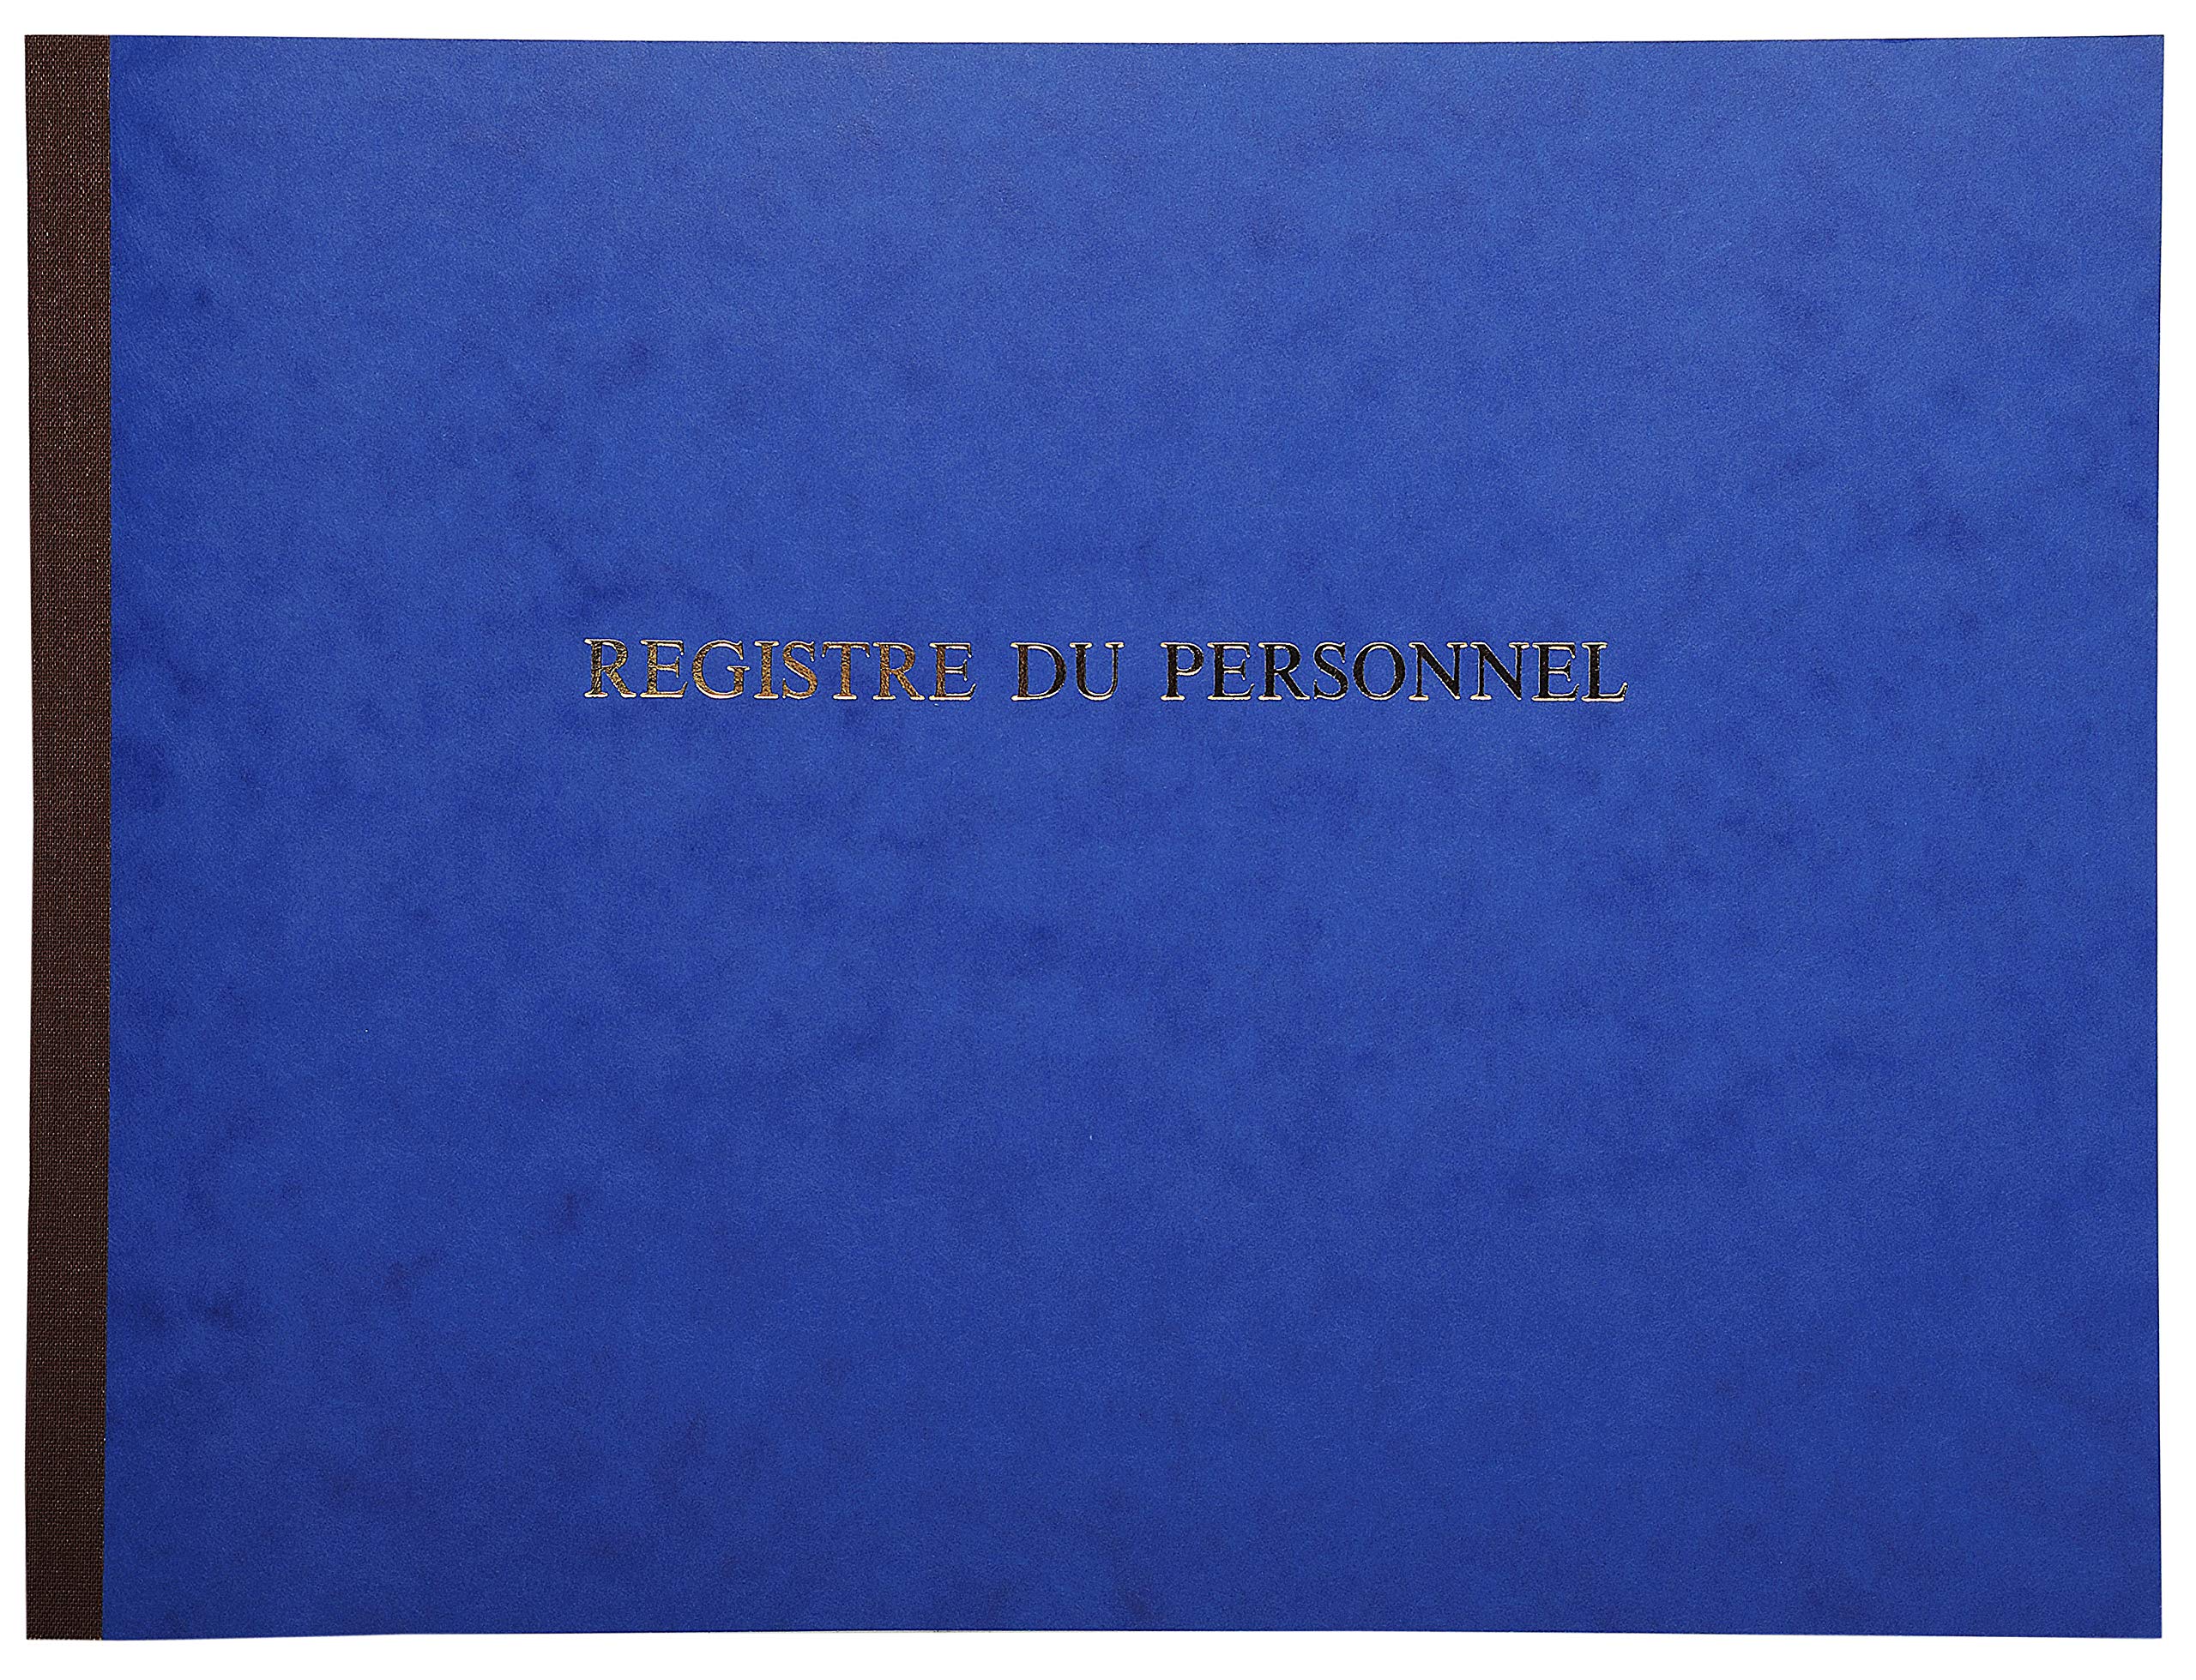 Le Delphin – Ref. 310D – 1 Register für Beschäftigte und Praktikanten – weicher Einband aus glänzendem Karton – horizontales Format – Maße 24 x 32 cm – 52 Seiten – Farbe: Blau